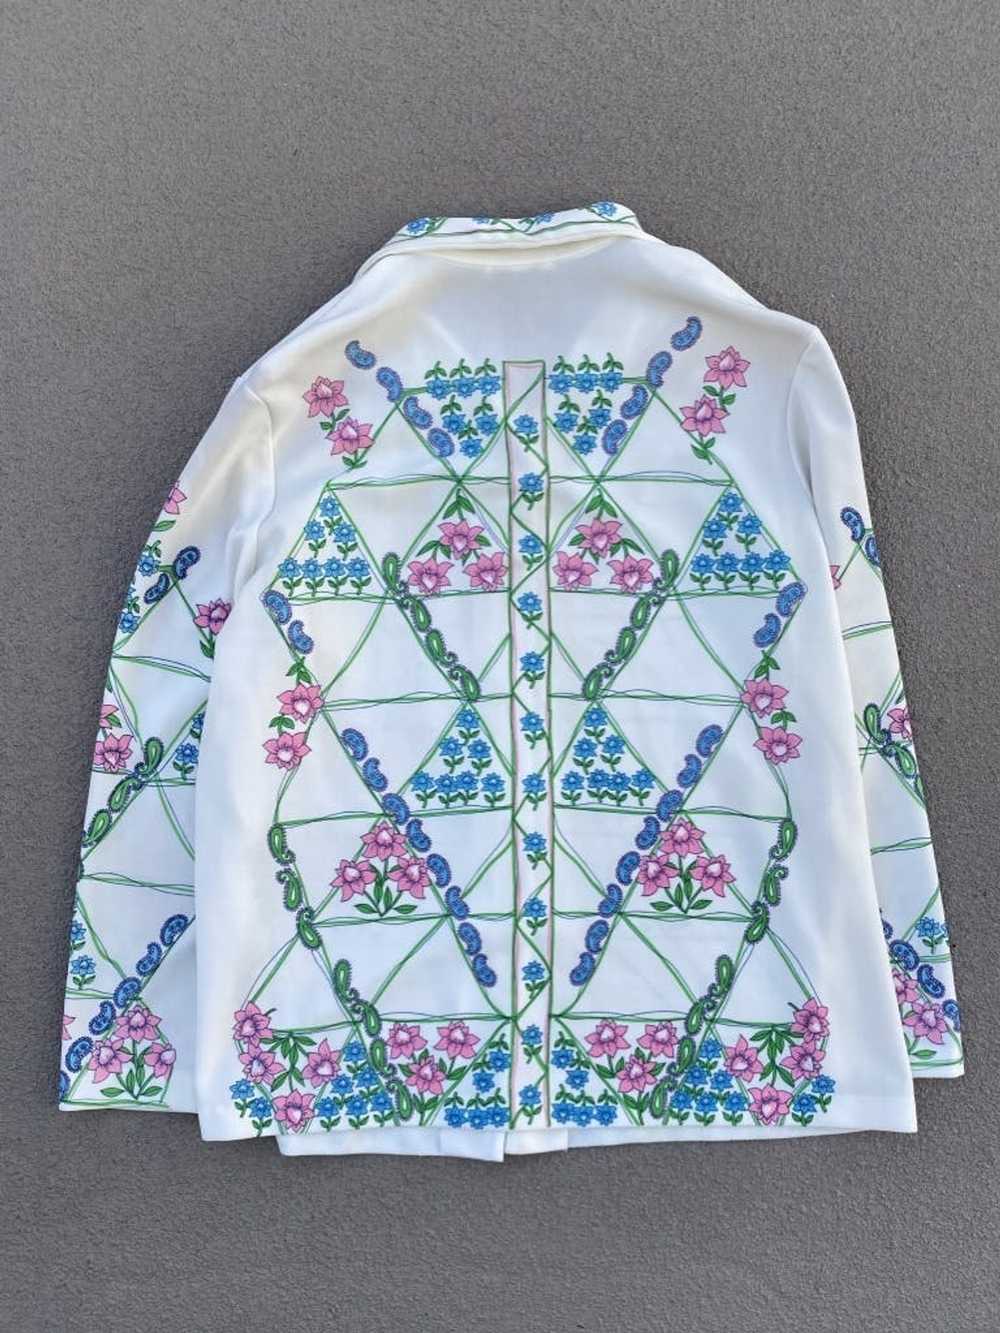 Vintage Vintage Floral Overshirt Smartique [Mediu… - image 4